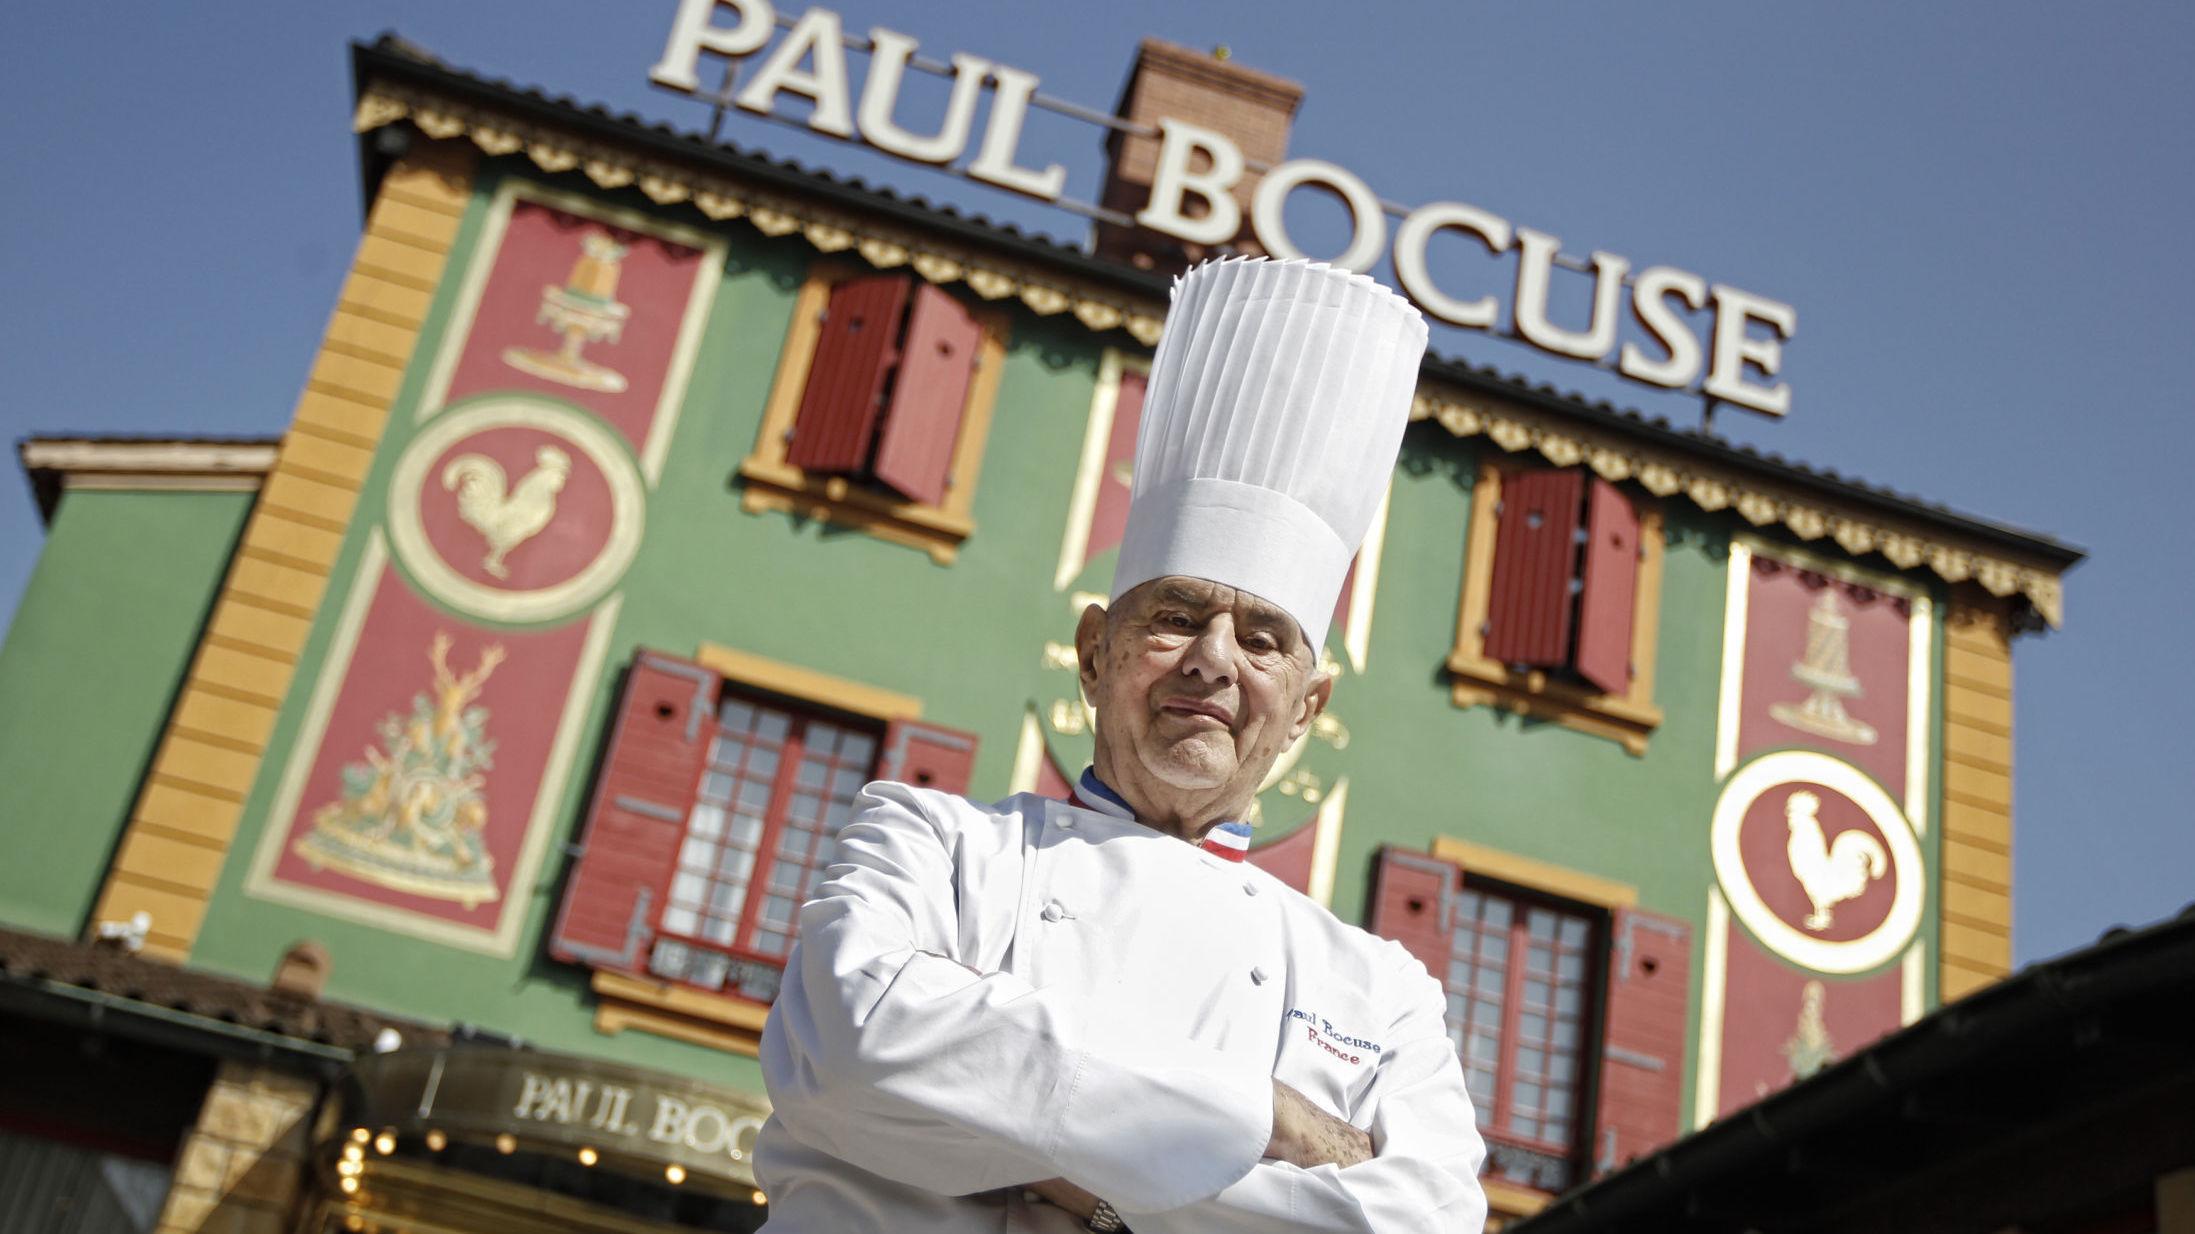 MISTER STJERNE: Restauranten Paul Bocuse ble åpnet av kokken med samme navn. Nå går den fra tre til to stjerner i Michelin-guiden for 2020. Foto: AP Photo/Laurent Cipriani, File